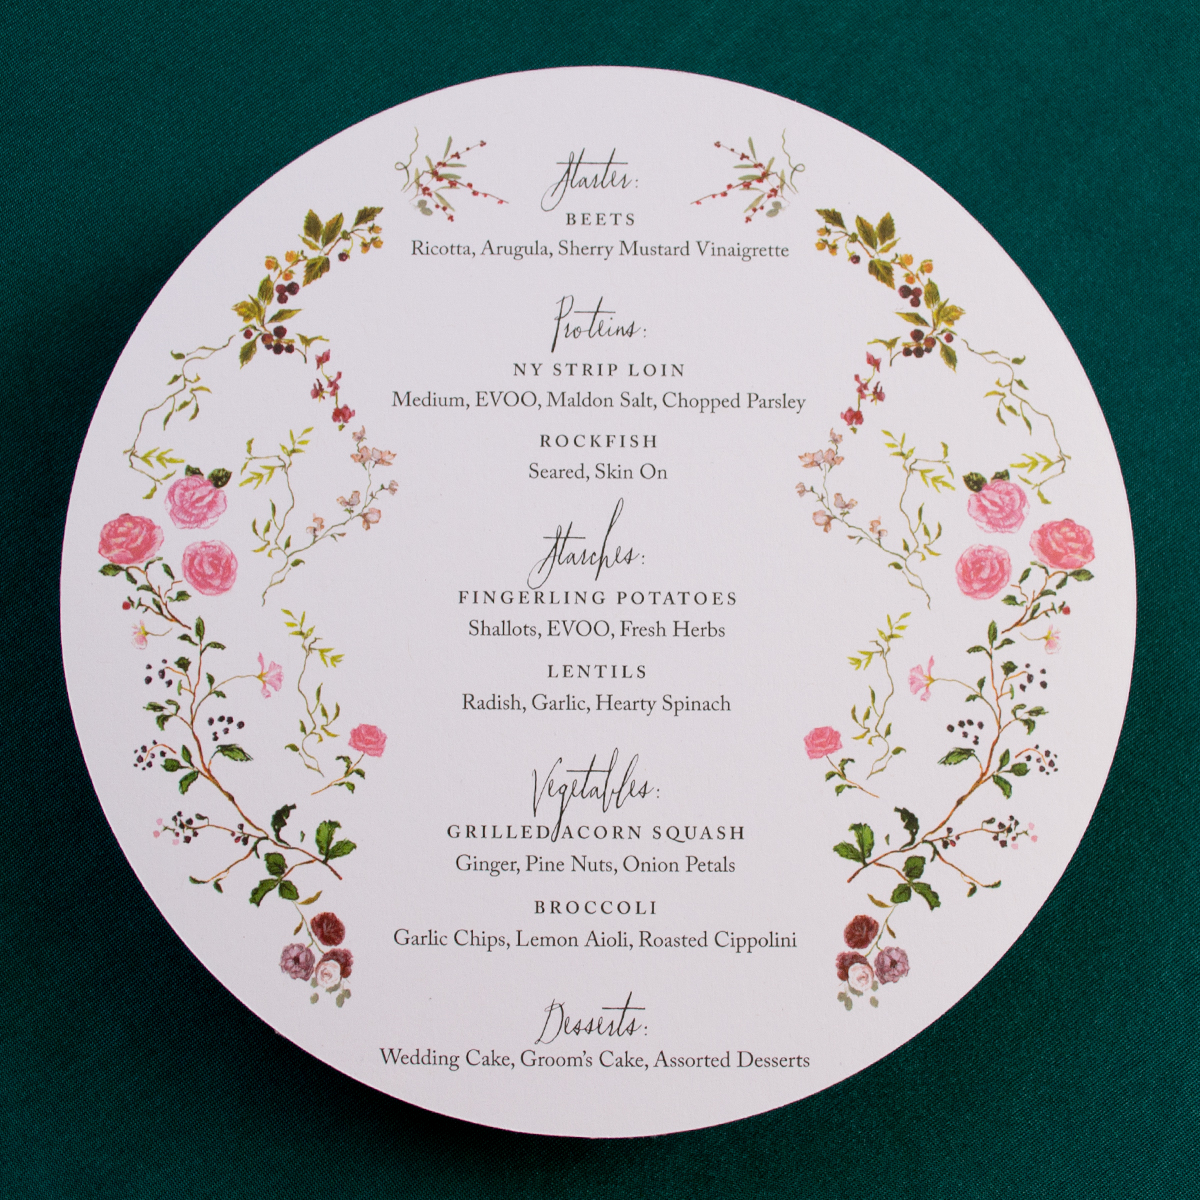 die cut circular menu designed by jolly edition